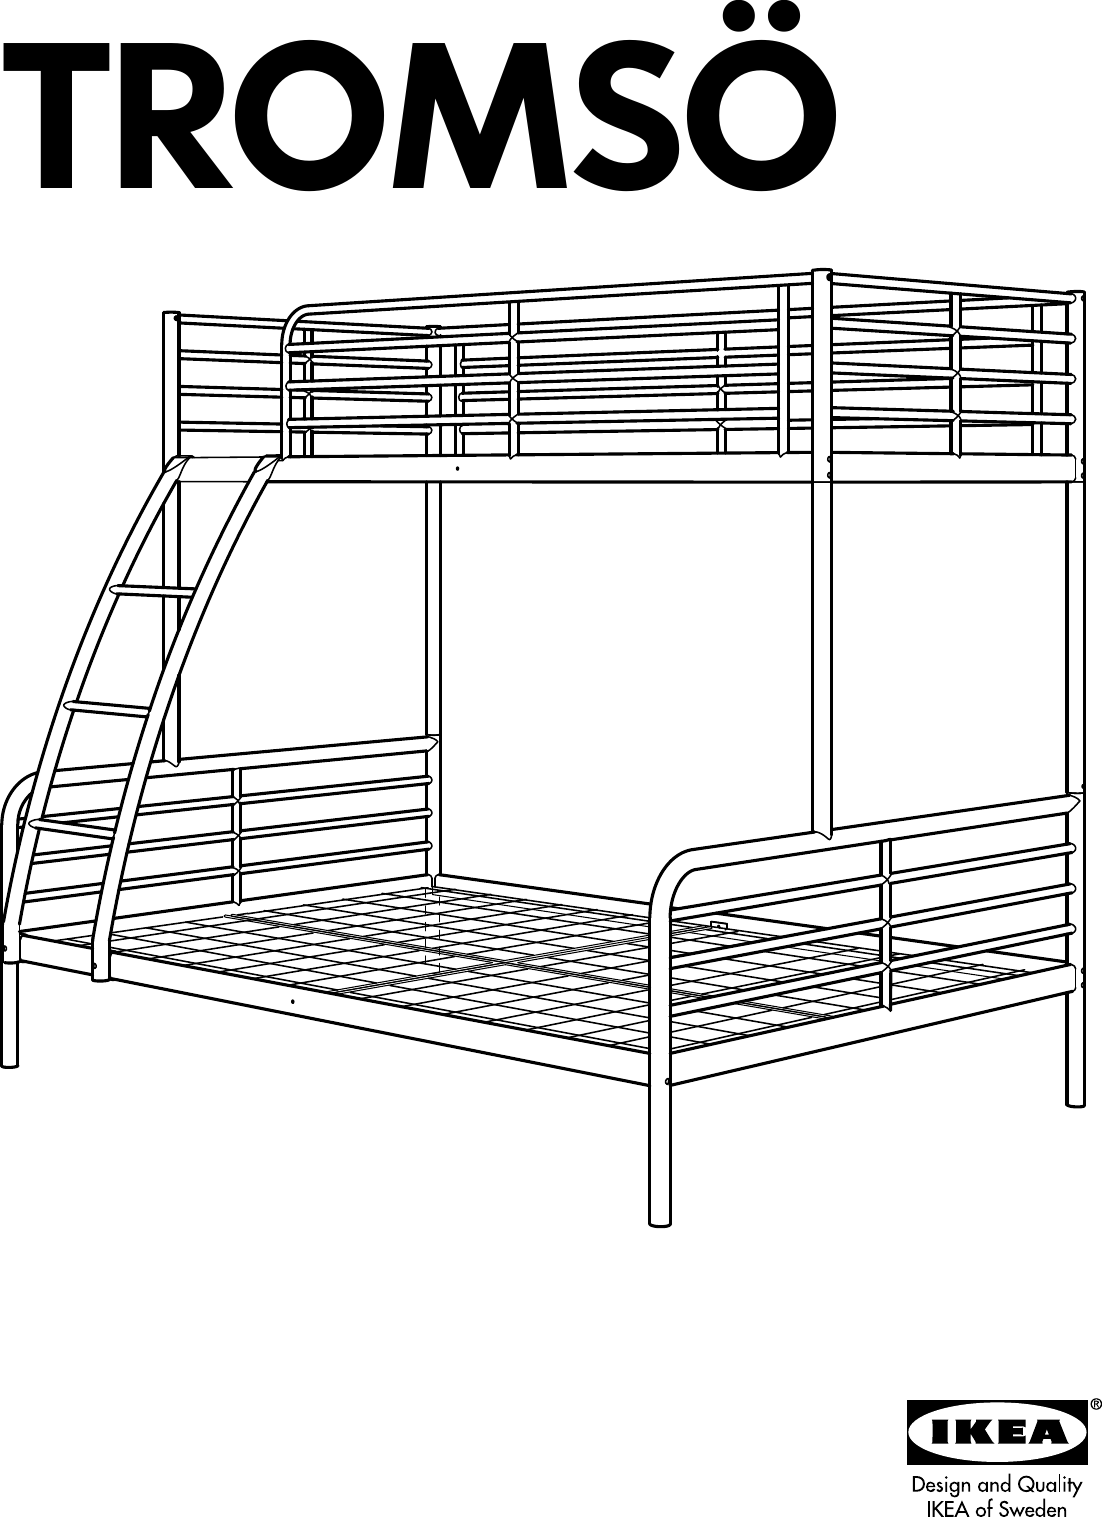 двухъярусная кровать икеа тромсо инструкция